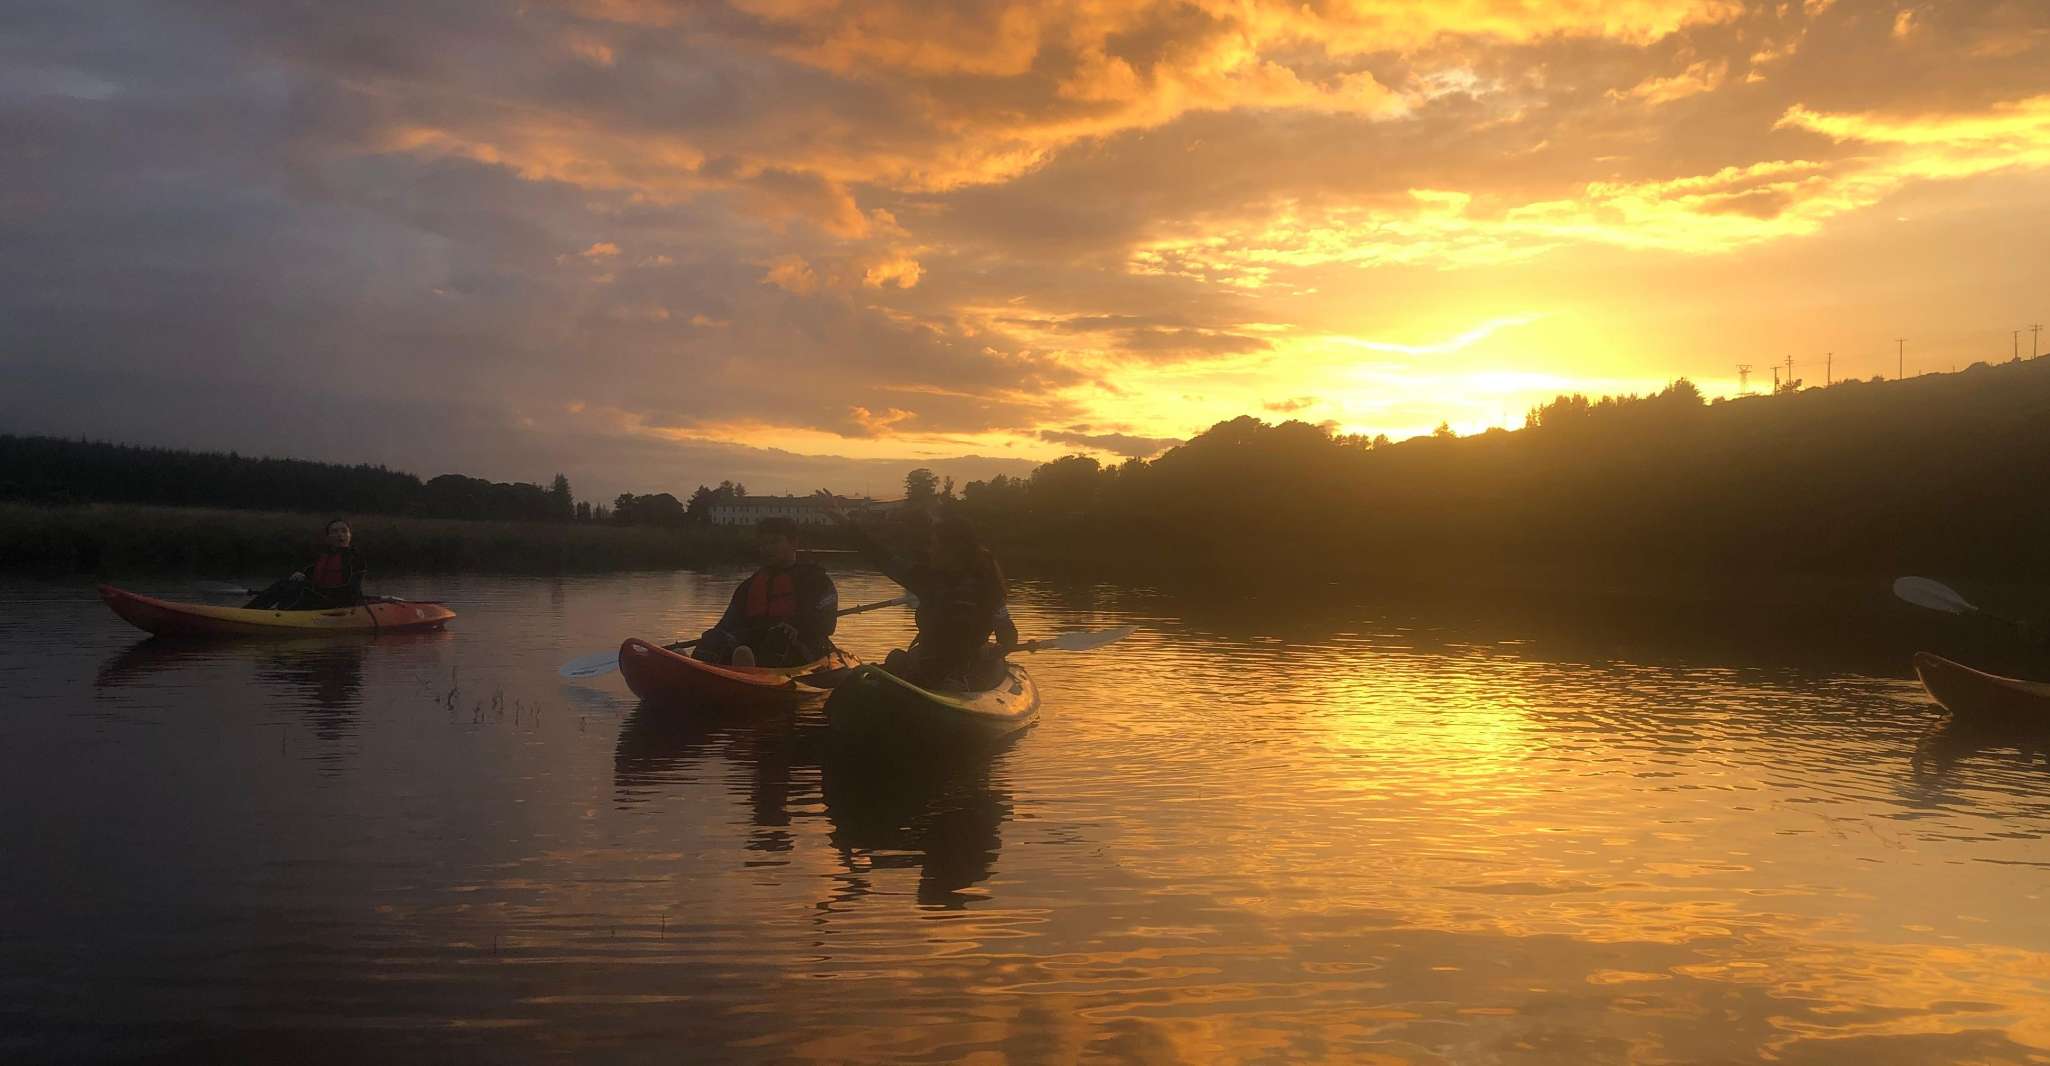 Donegal, Sunset Kayak Trip on Dunlewey Lake - Housity